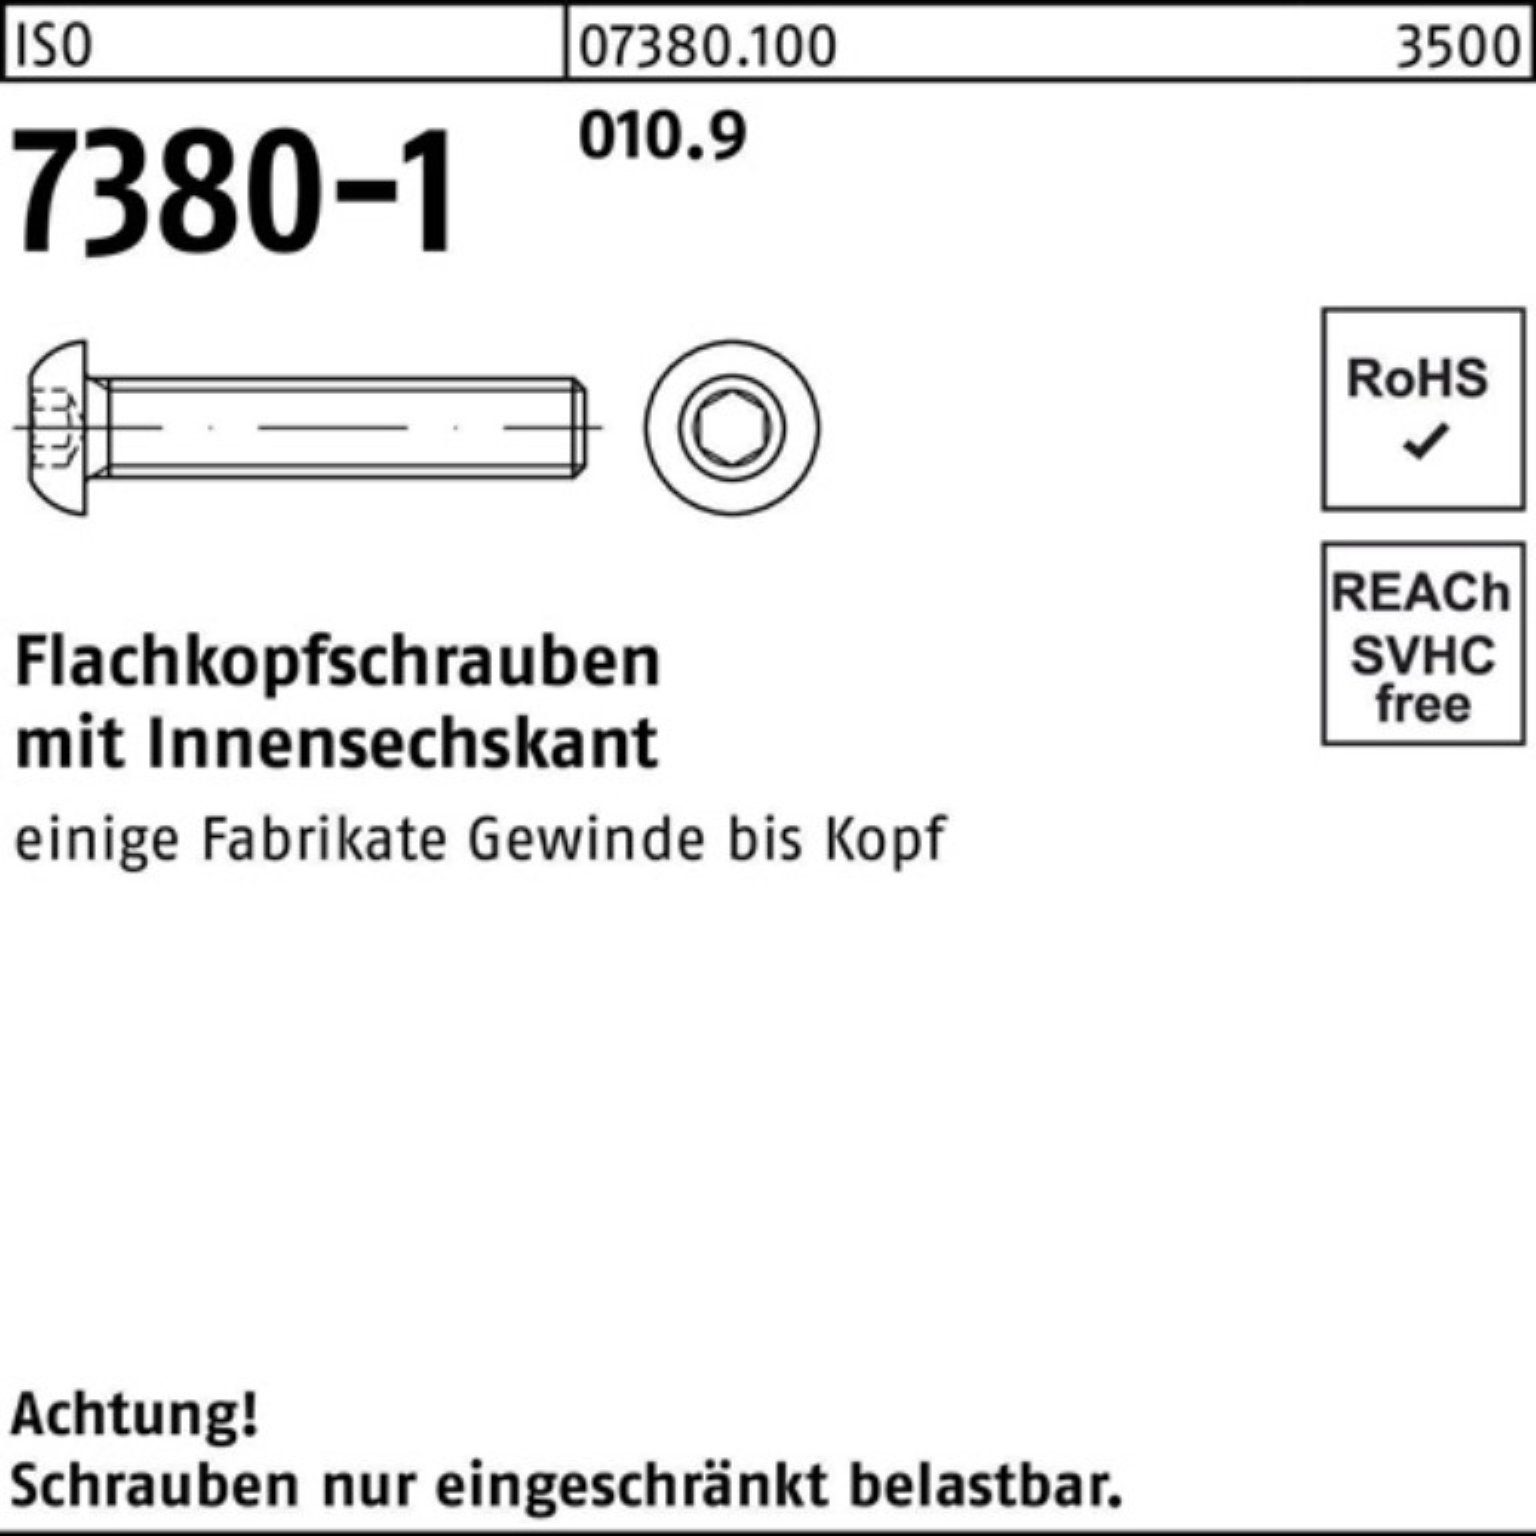 Reyher Schraube 200er M6x Pack Flachkopfschraube 7380-1 55 Innen-6kt 200 St 010.9 ISO